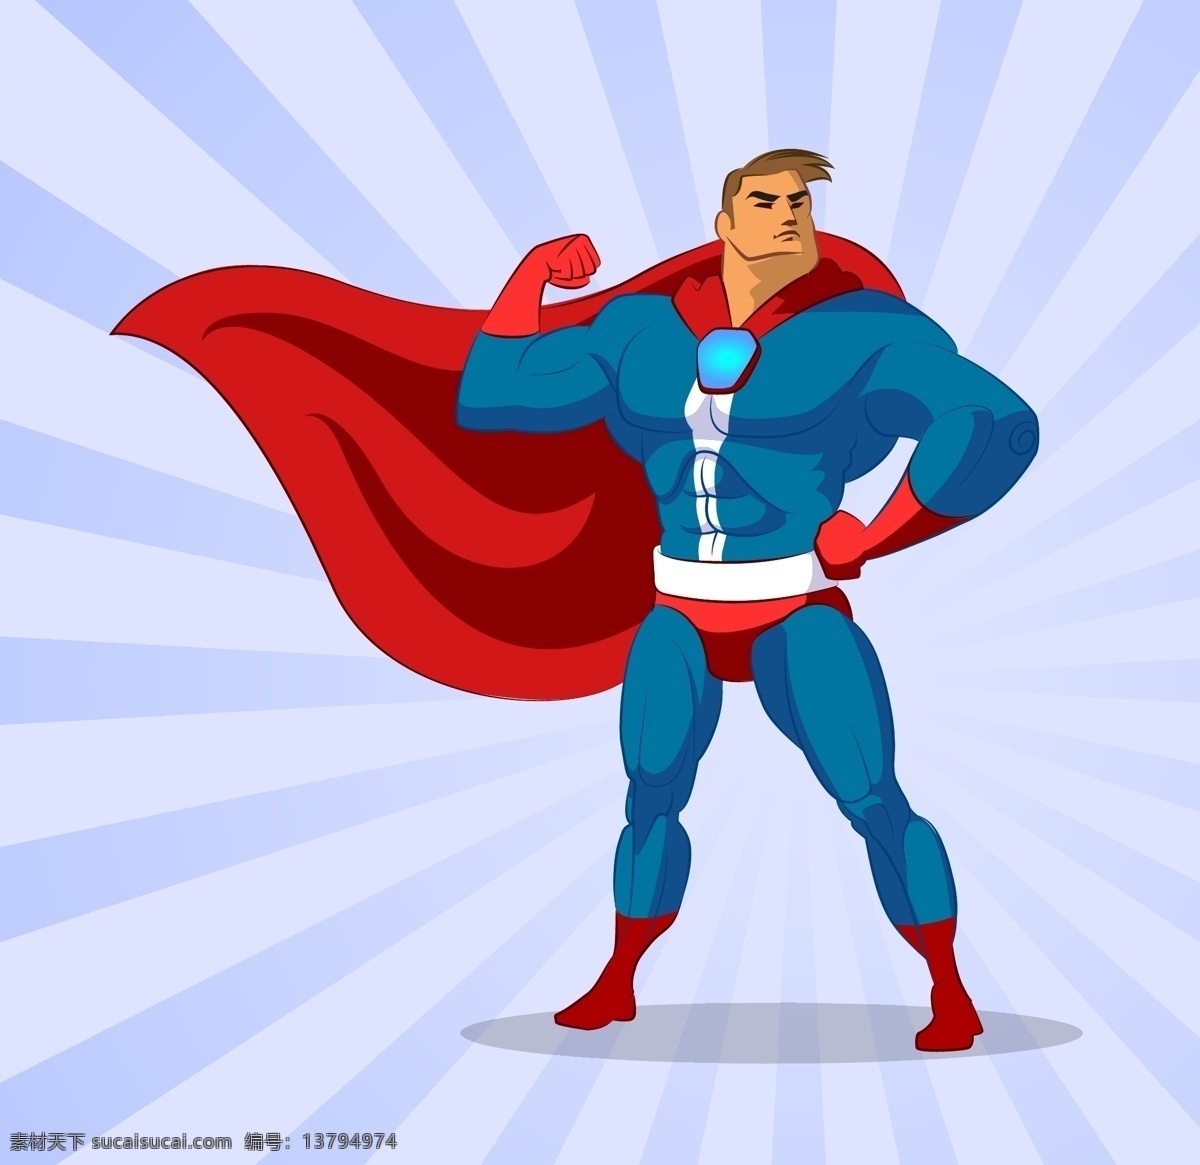 卡通超人插画 卡通超人 超级英雄 动漫英雄 超级英雄漫画 卡通动漫形象 卡通形象 日常生活 矢量人物 矢量素材